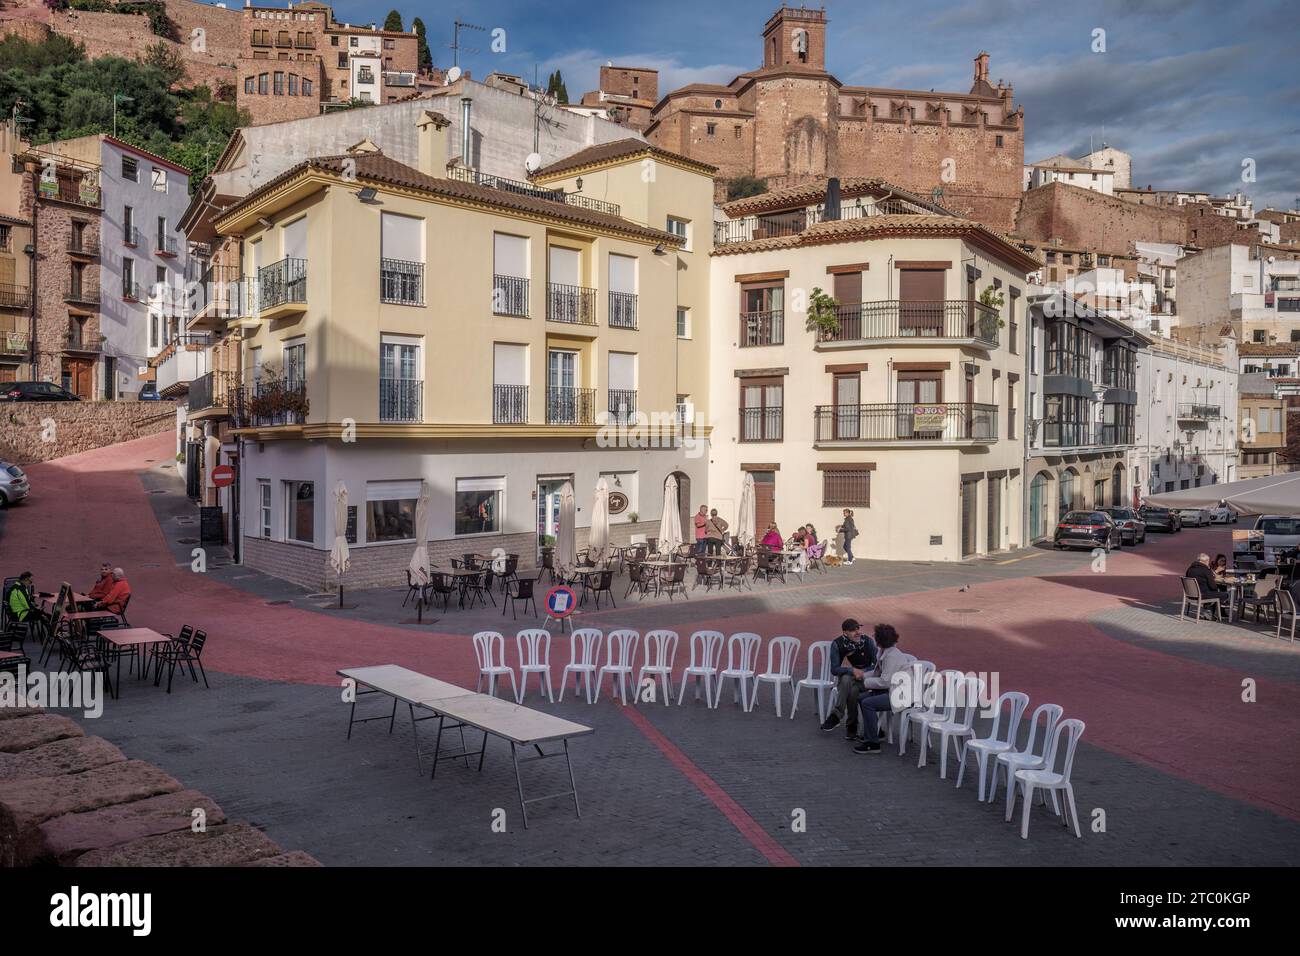 Couple assis sur une scène avec des chaises blanches dans une rangée parlant amicalement sur la place de la ville de Villafames (Vilafames) province de Castellon, Espagne, Europe. Banque D'Images